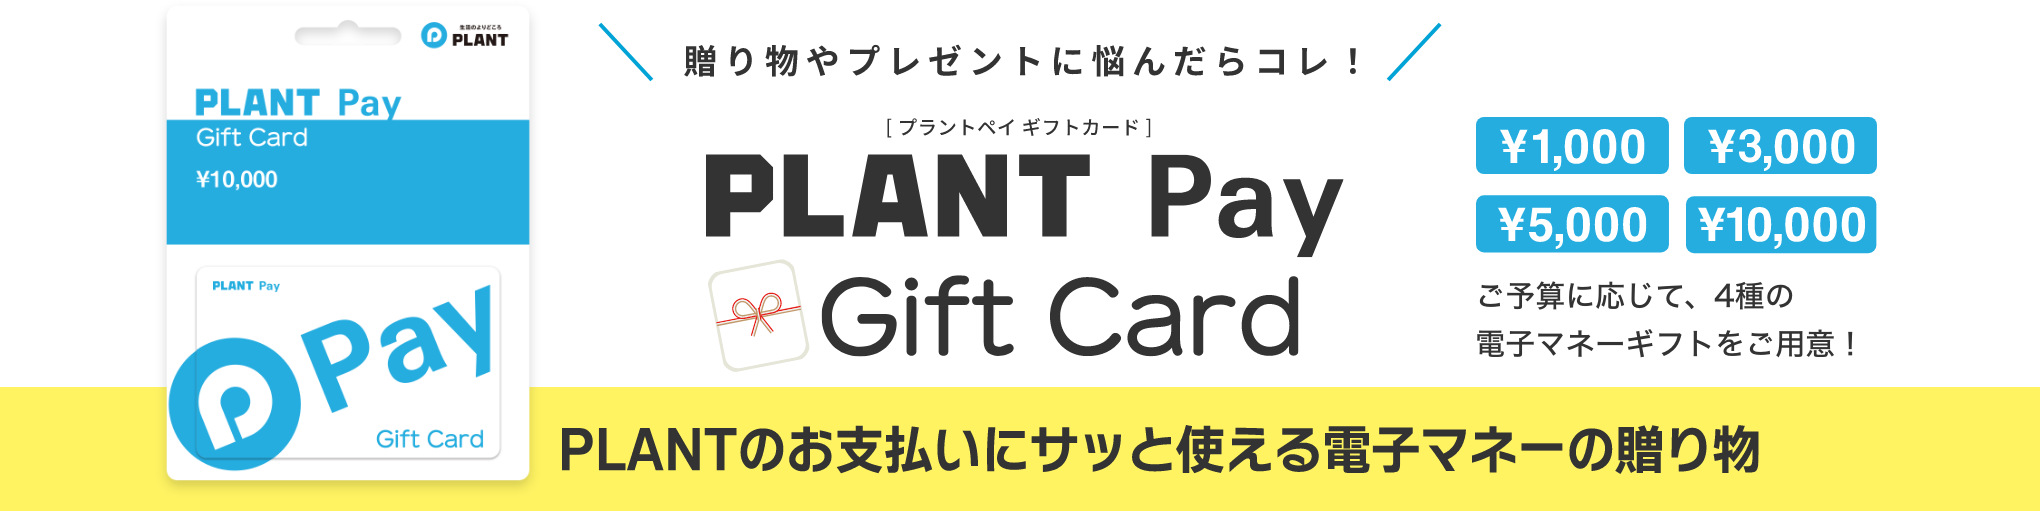 贈り物やプレゼントに悩んだらコレ！PLANT Payギフトカード